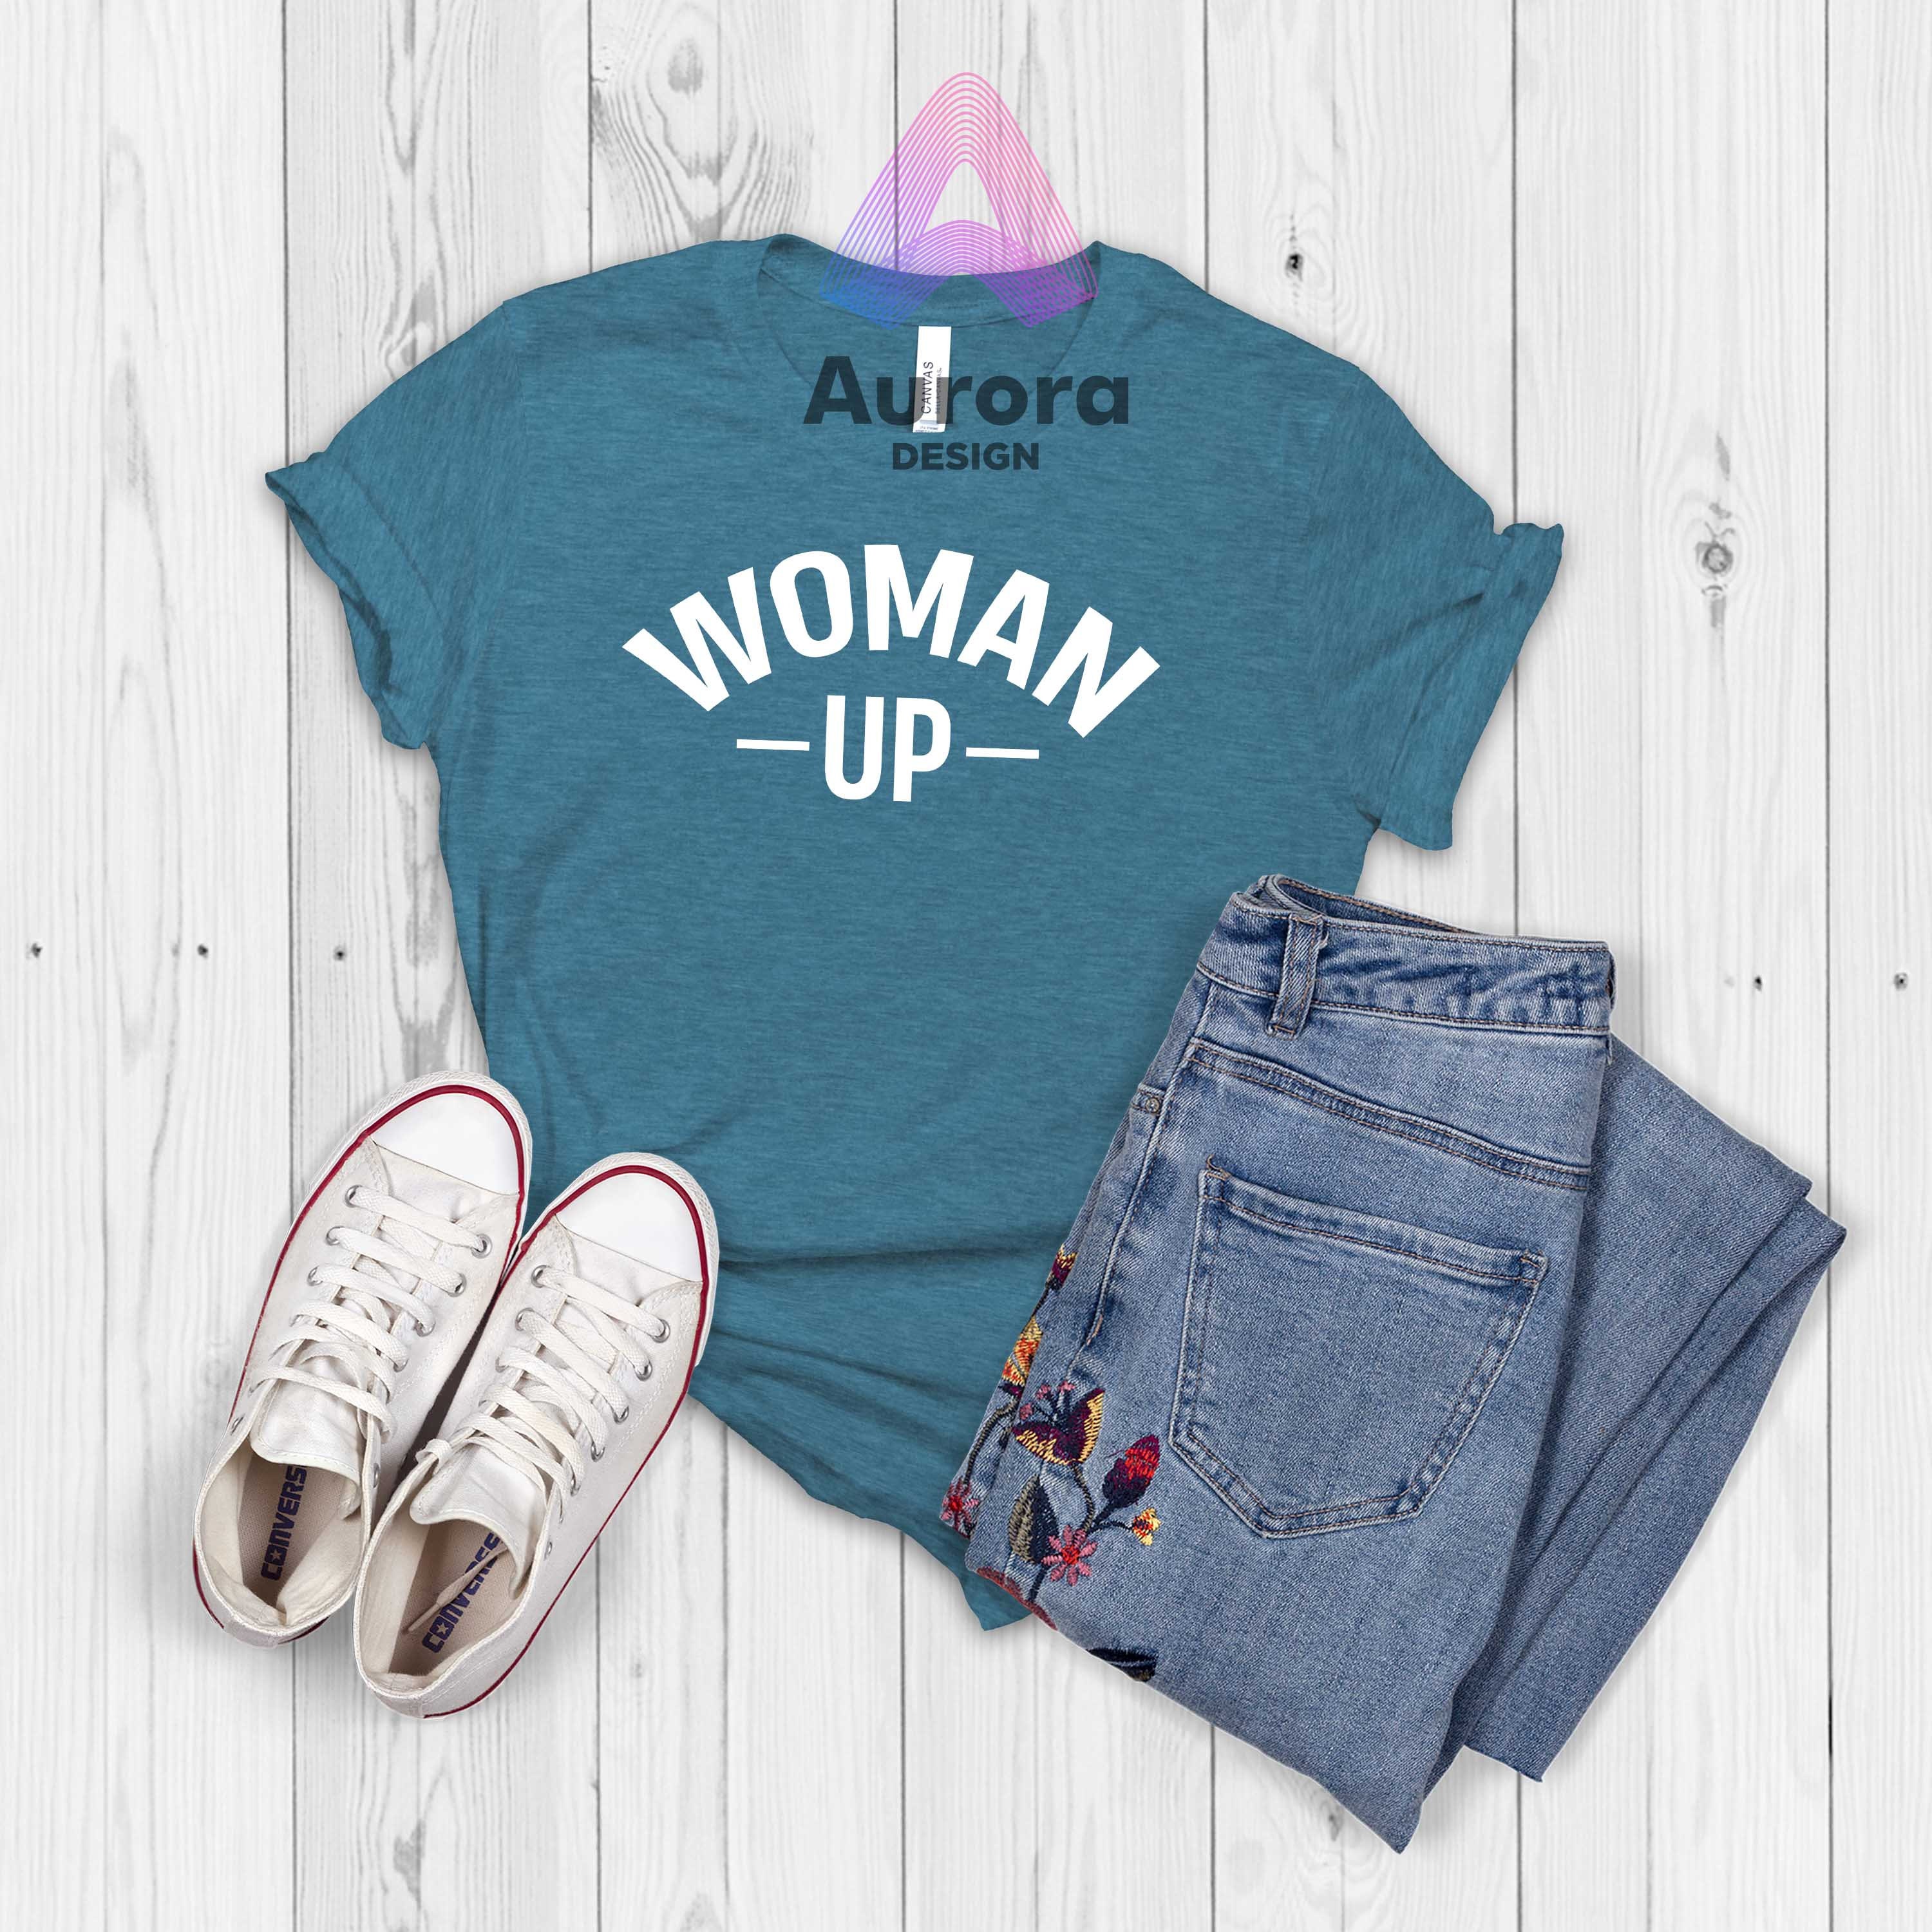 Discover Woman Up T-shirt, Motivational Shirt, Feminism Inspired Tank Tops, Best Summer Top, Women Empower Shirts, Human Rights Awareness Shirts